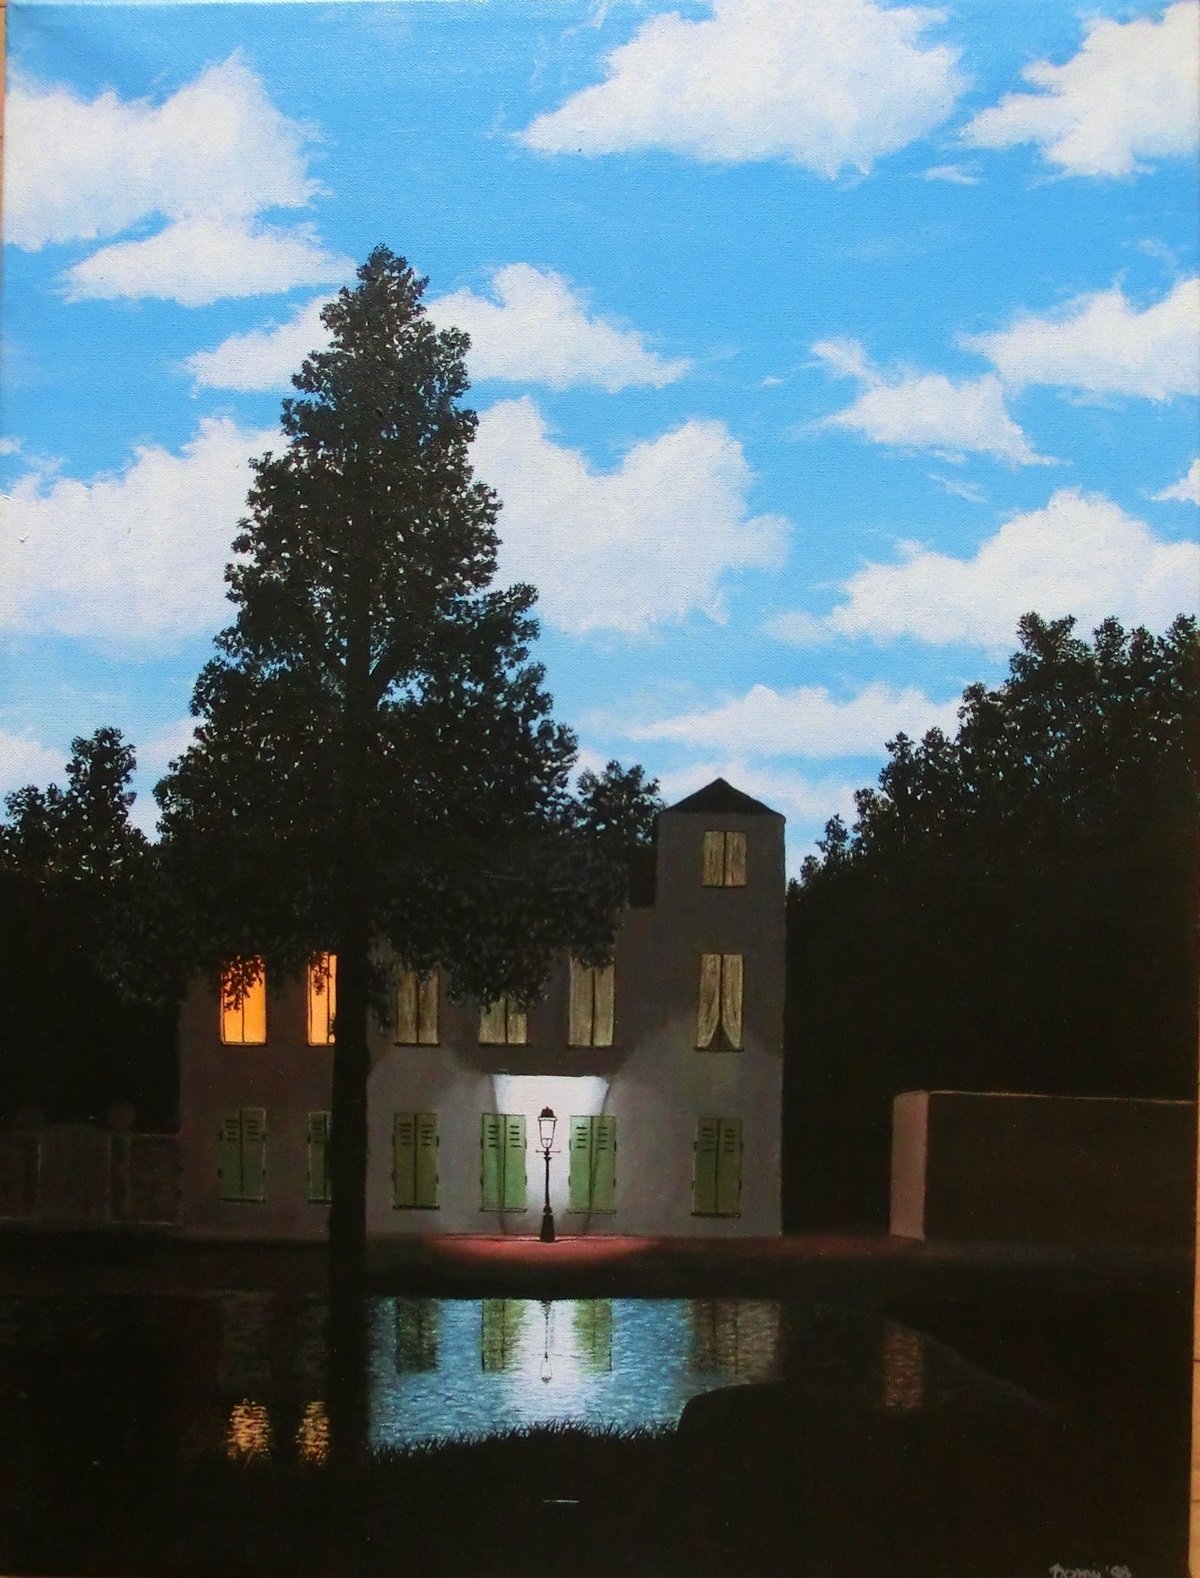 René Magritte, L'Empire des lumières, 1954. Musées royaux des Beaux Arts de Belgique, Bruxelles